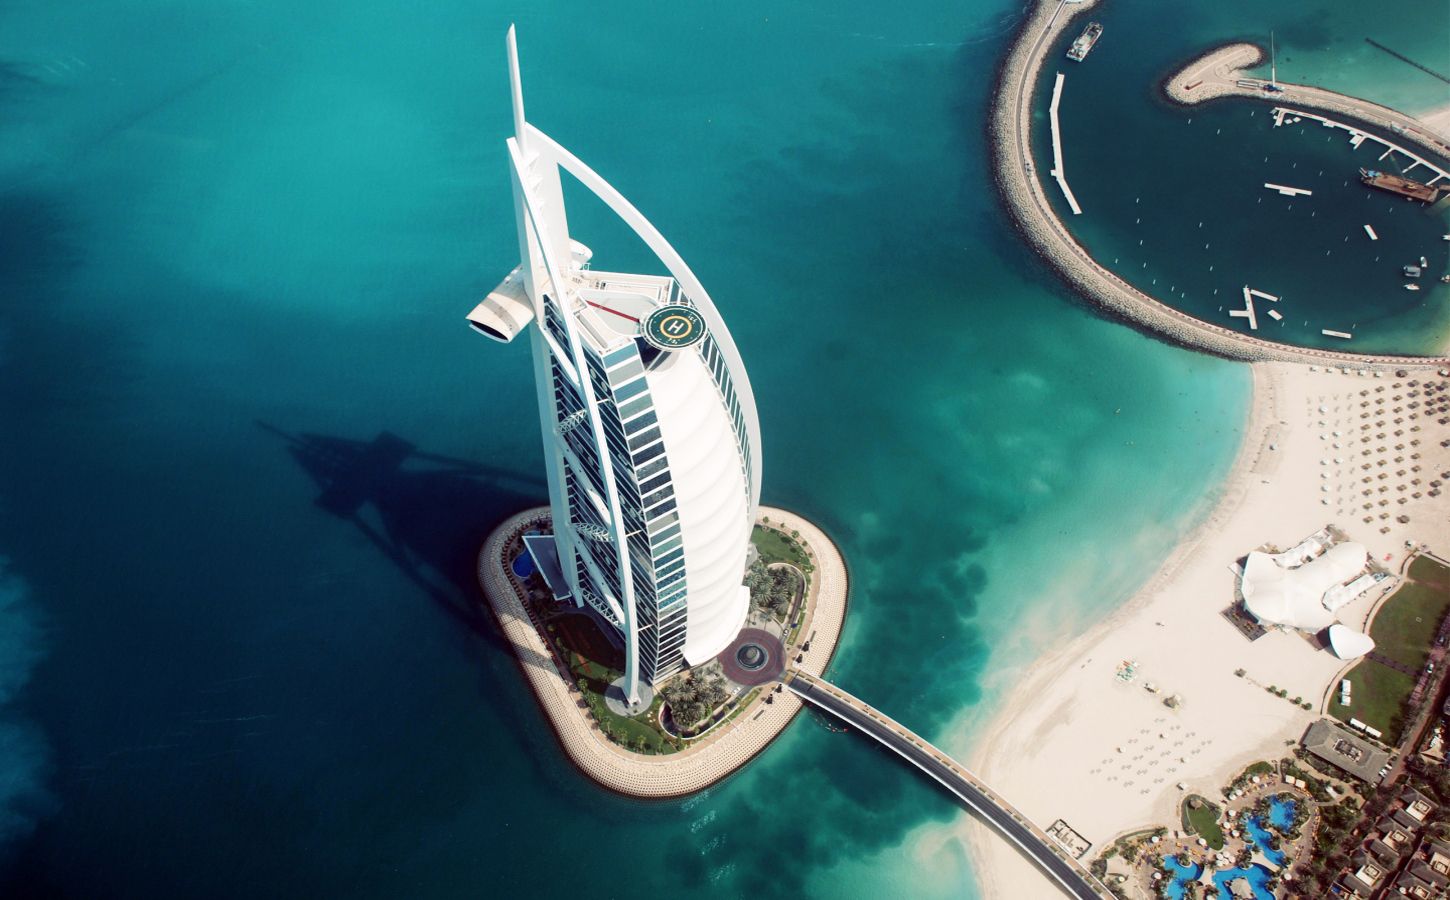 Điều gì làm nên đẳng cấp của Burj Al Arab - khách sạn 7 sao duy nhất trên thế giới?